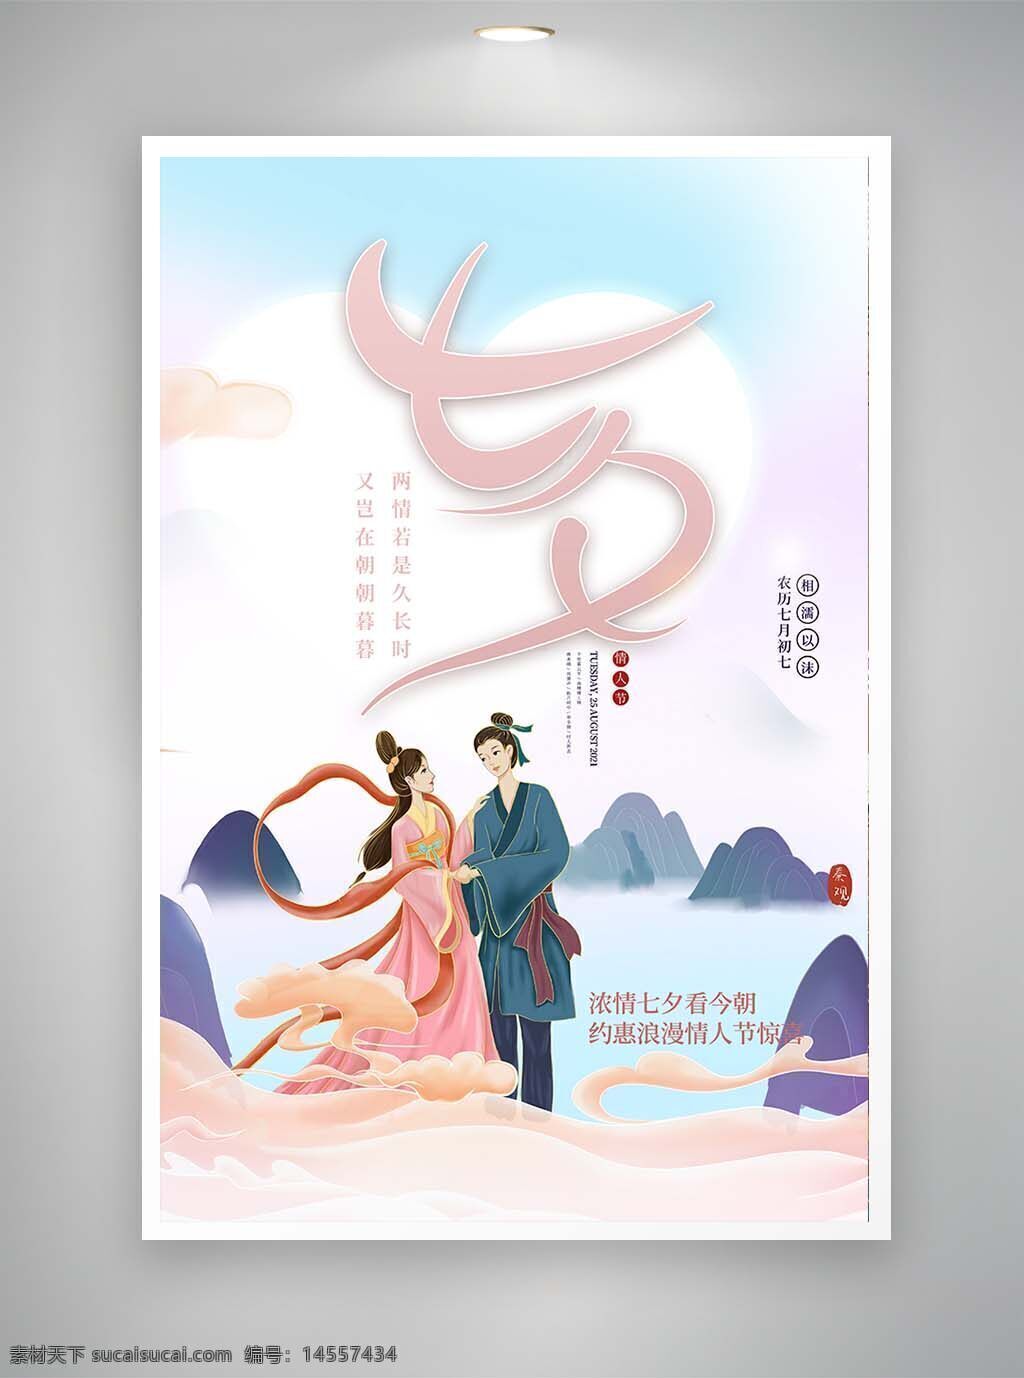 中国风海报 古风海报 促销海报 节日海报 七夕海报